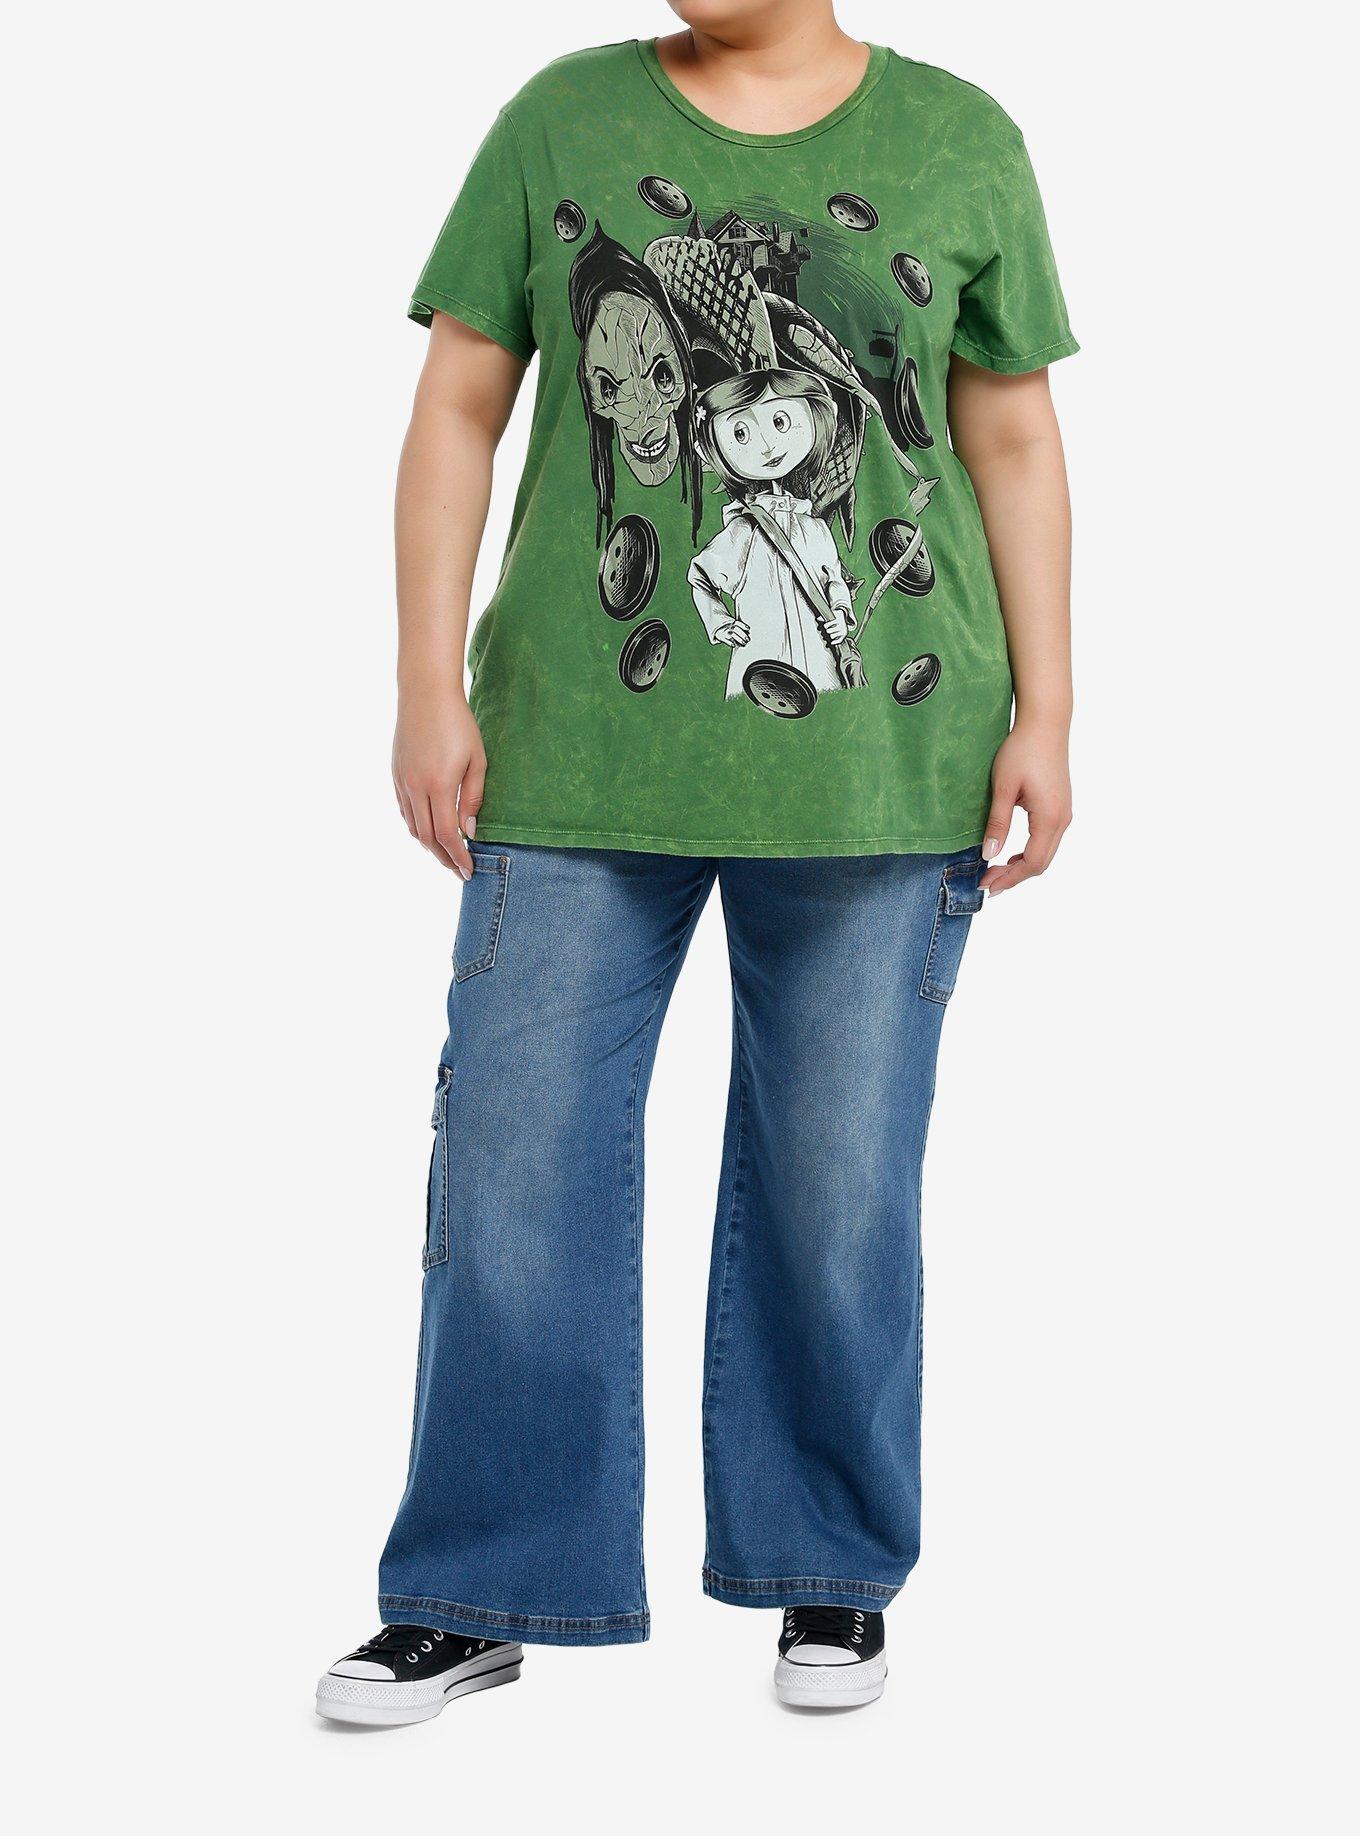 Coraline The Beldam Green Wash Boyfriend Fit Girls T-Shirt Plus Size, MULTI, alternate